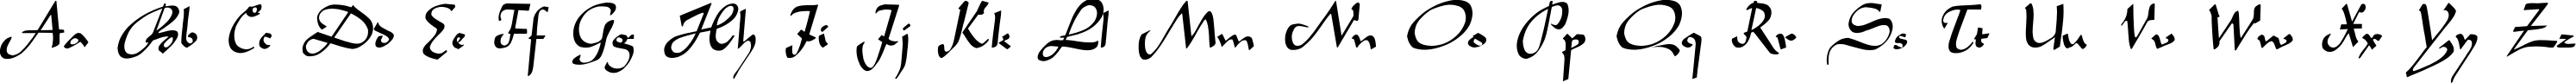 Пример написания английского алфавита шрифтом LegendeC Plain